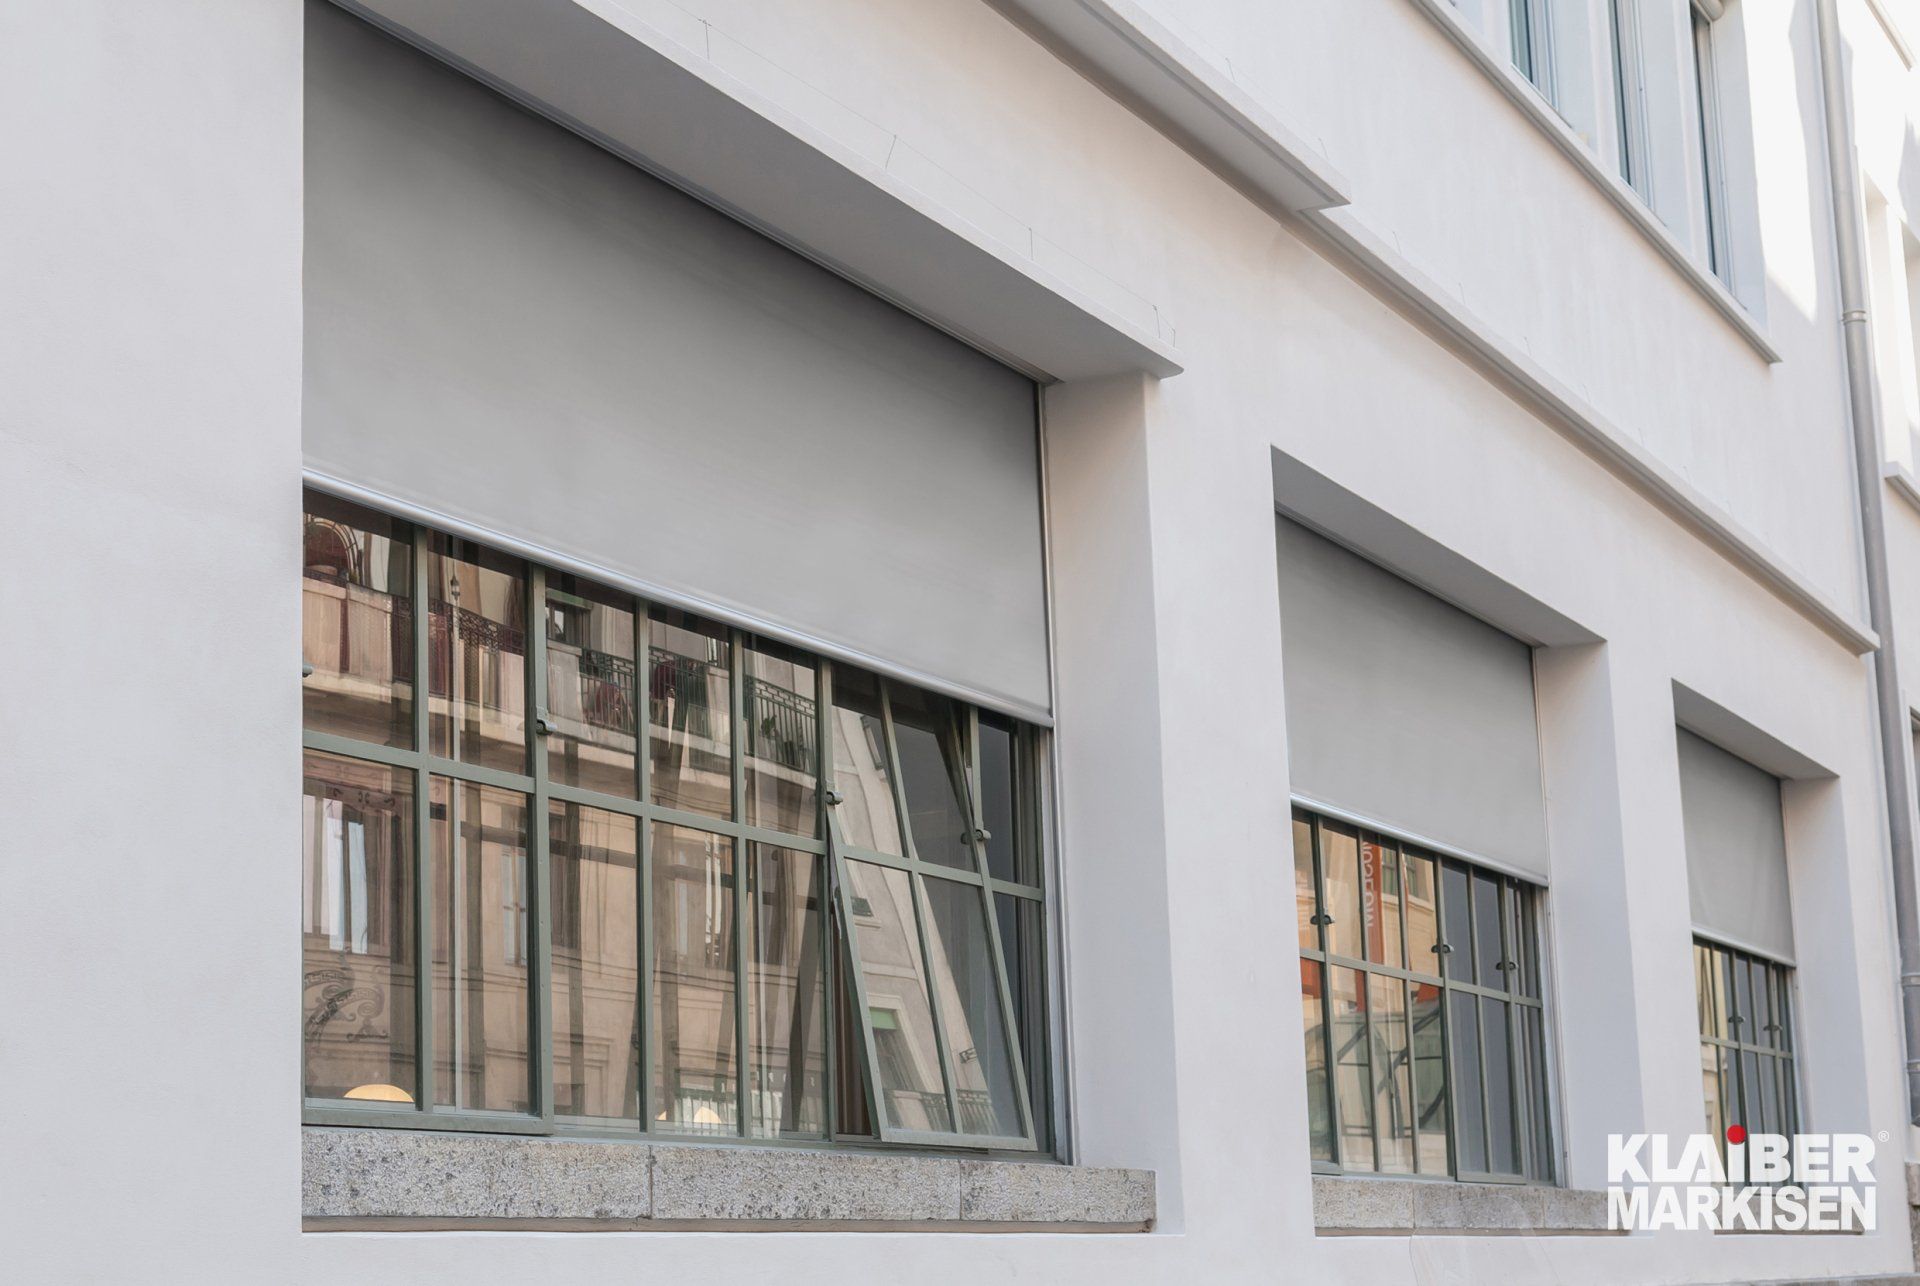 Klaiber Fassadenmarkise in grau vor Fenstern an Hauswand, halb heruntergelassen. LS Sonnenschutz Markisen mit Link zu Produktseite Fassadenmarkisen.